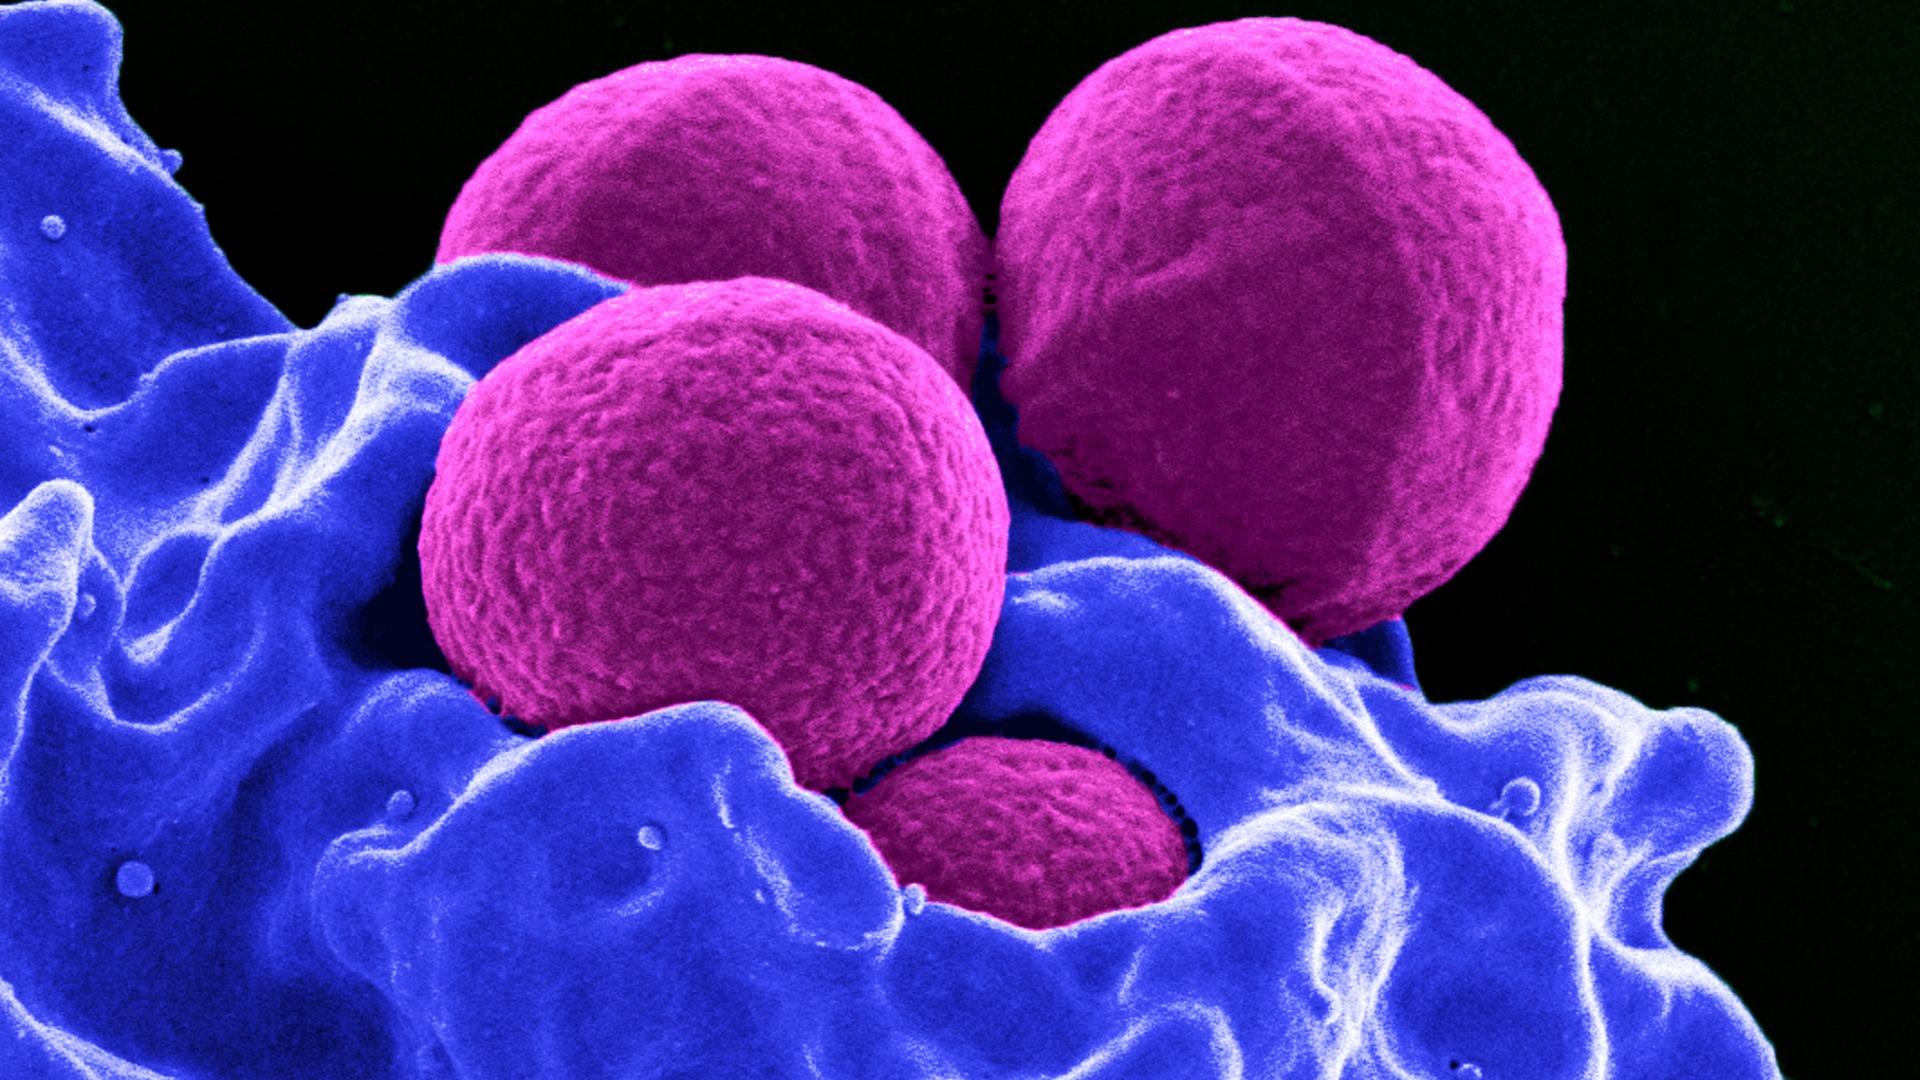 Bacterias resistentes, el mortal enemigo del siglo XXI